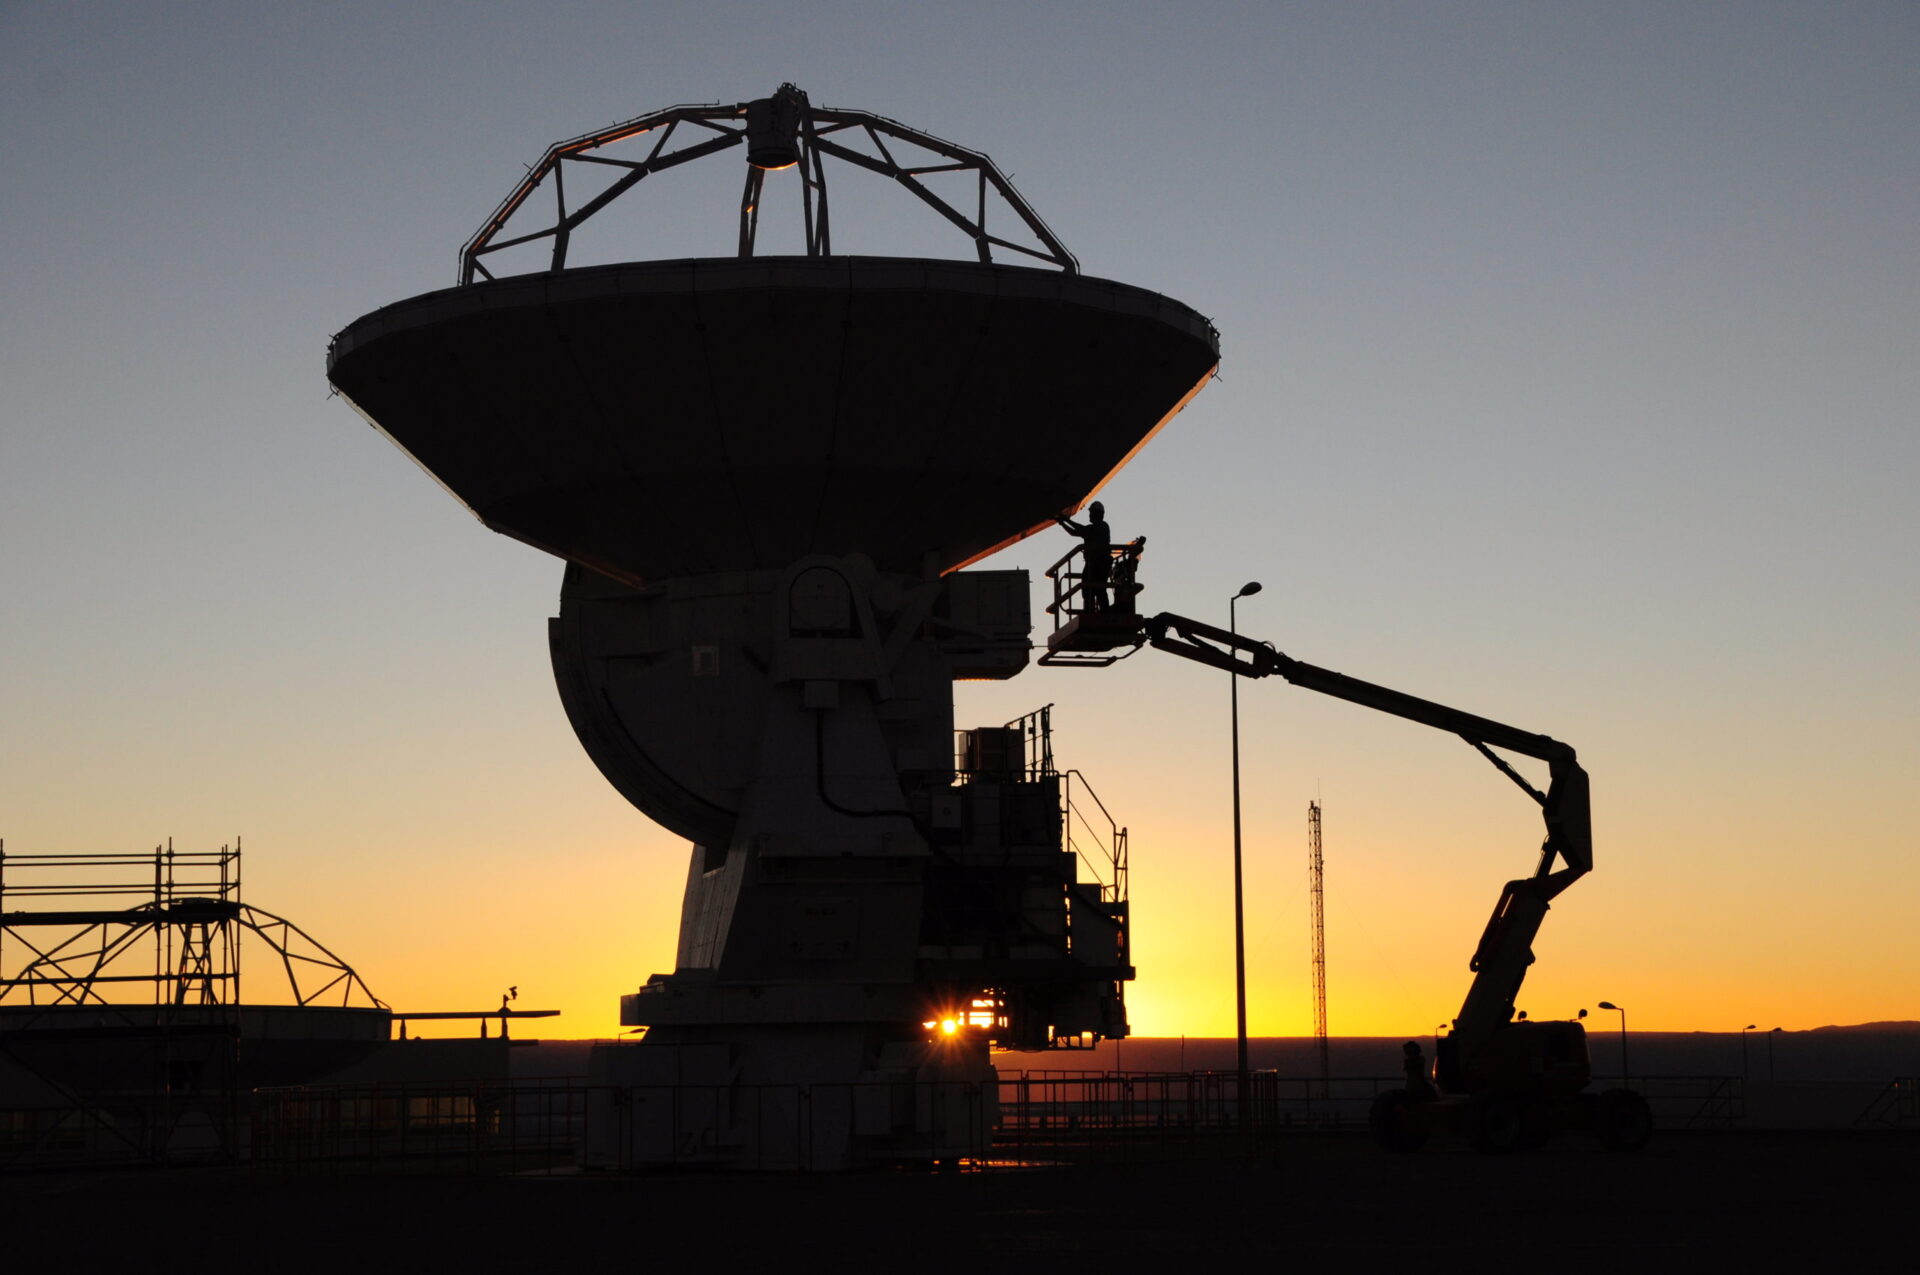 Técnicos de mantenimiento, una antena y un elevador. © ALMA (ESO / NAOJ / NRAO)